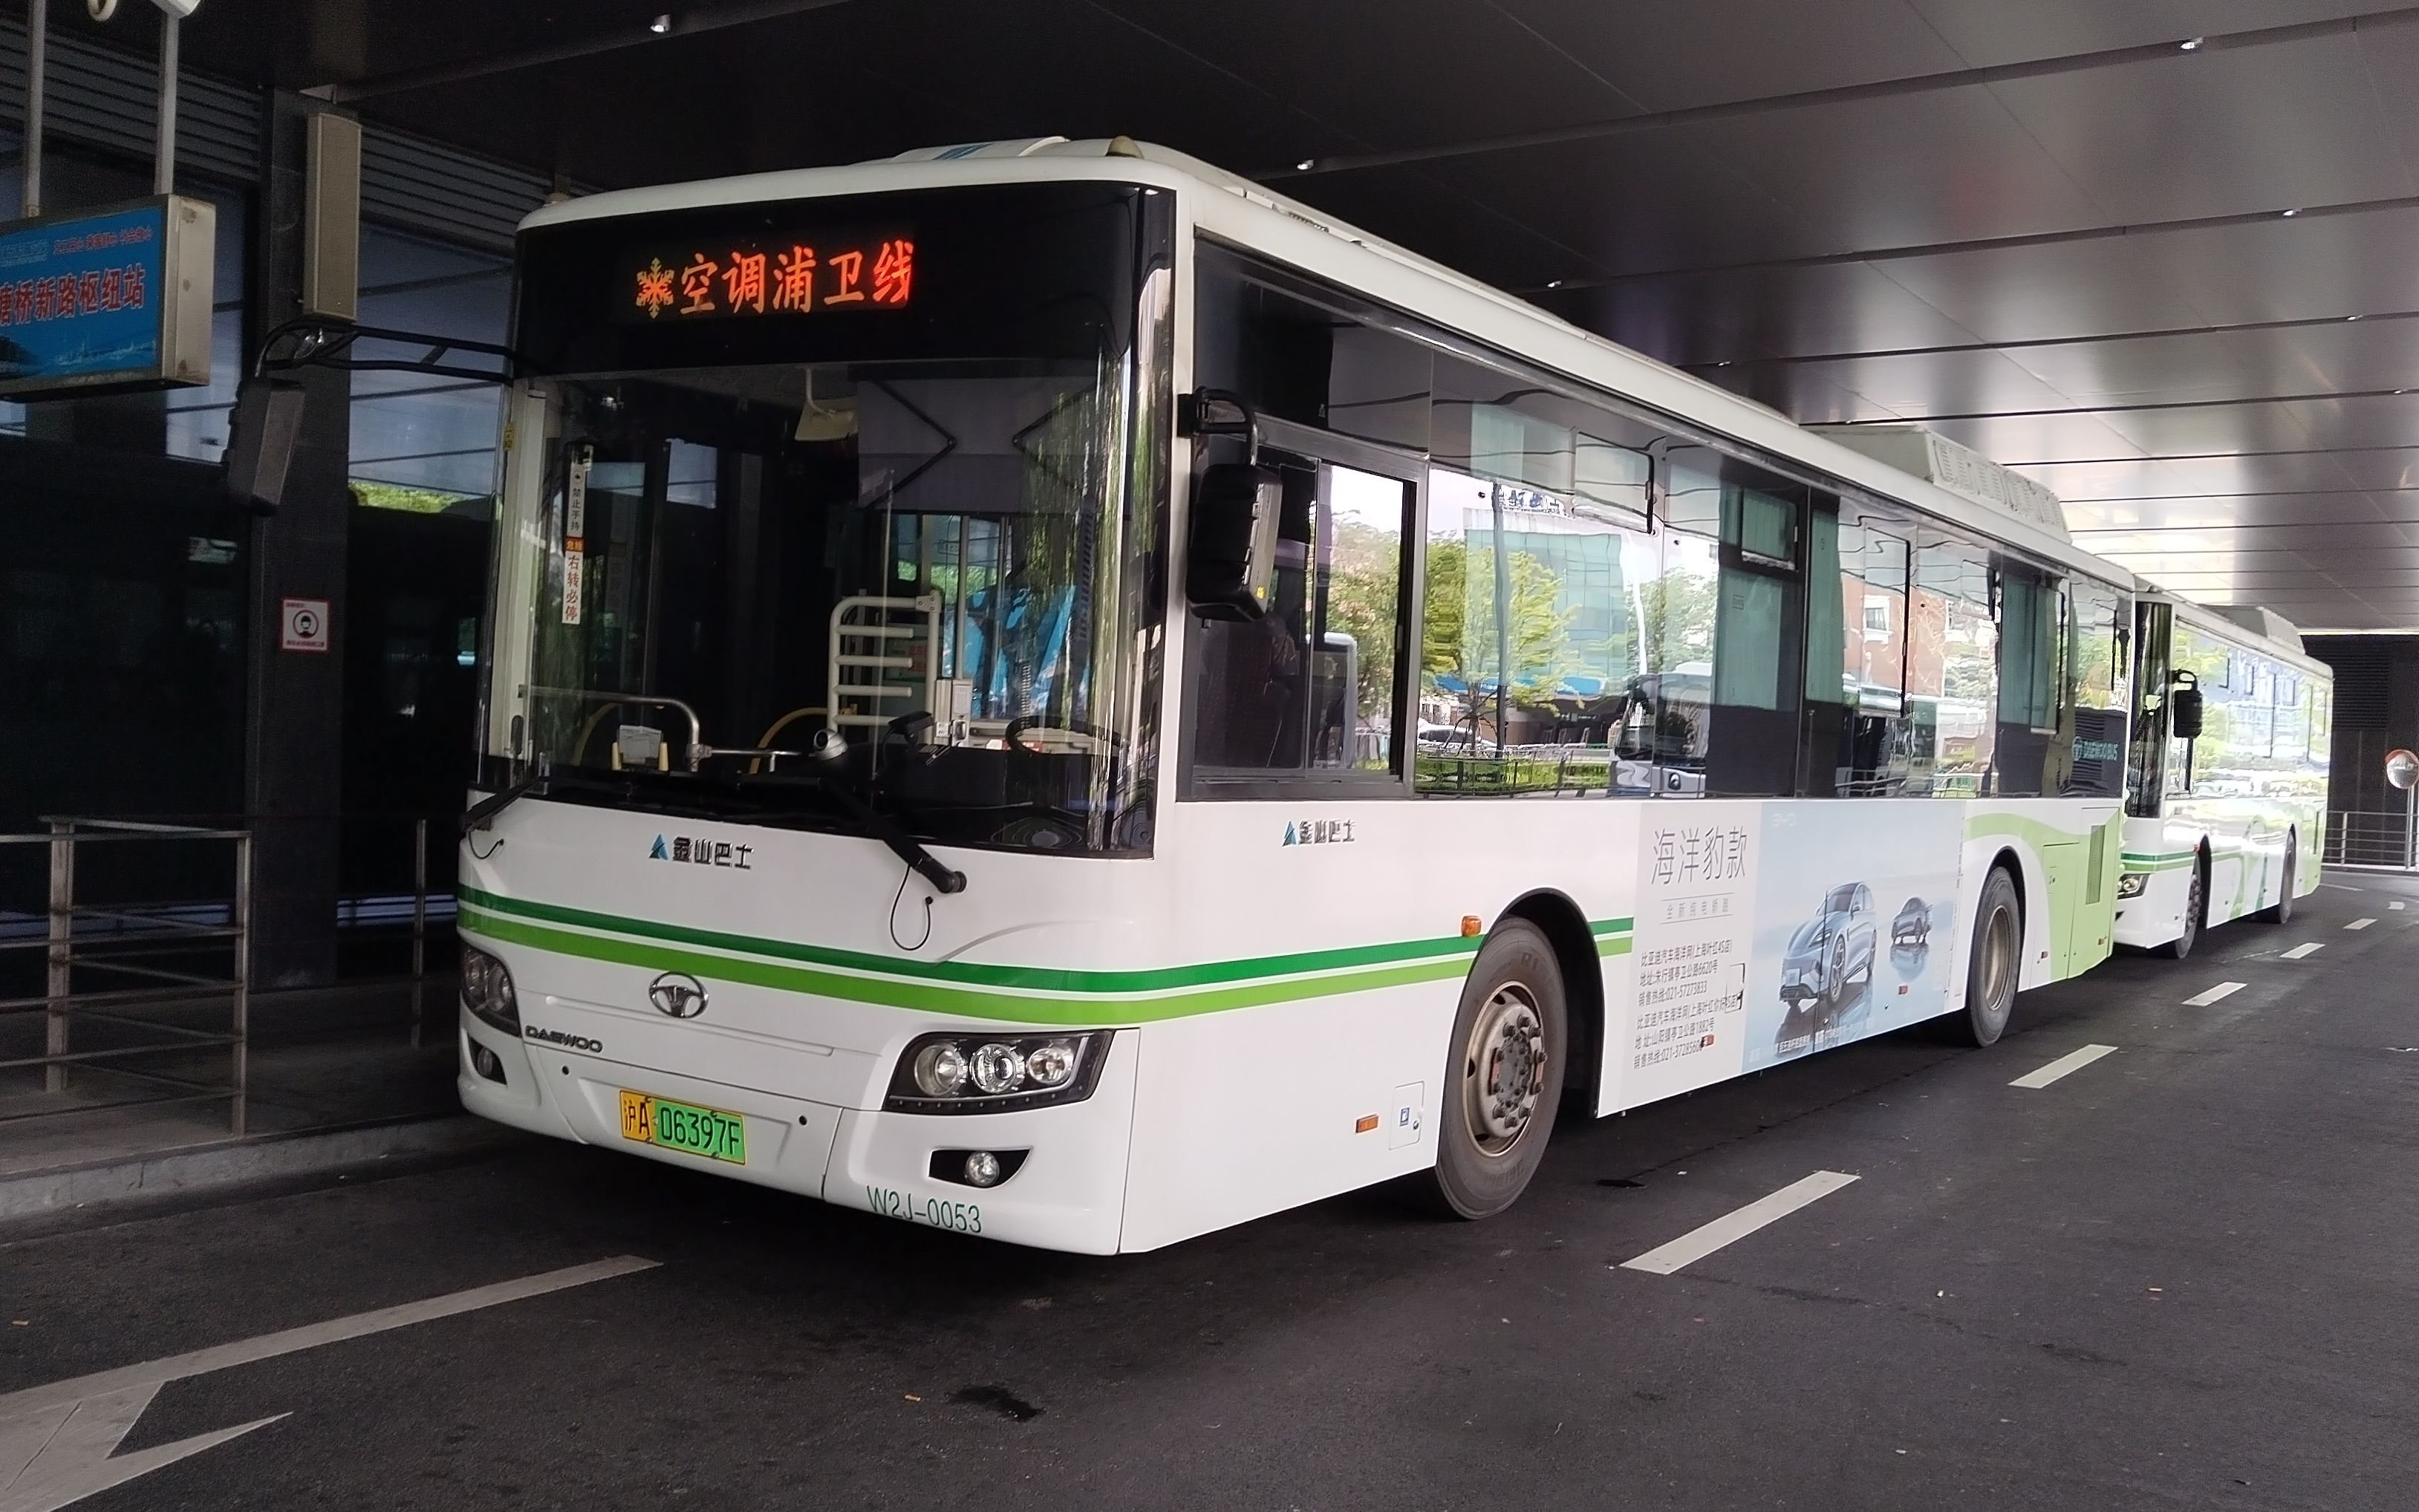 【百站长线】【上海·金山巴士】浦卫线 石化汽车站→塘桥新路公交